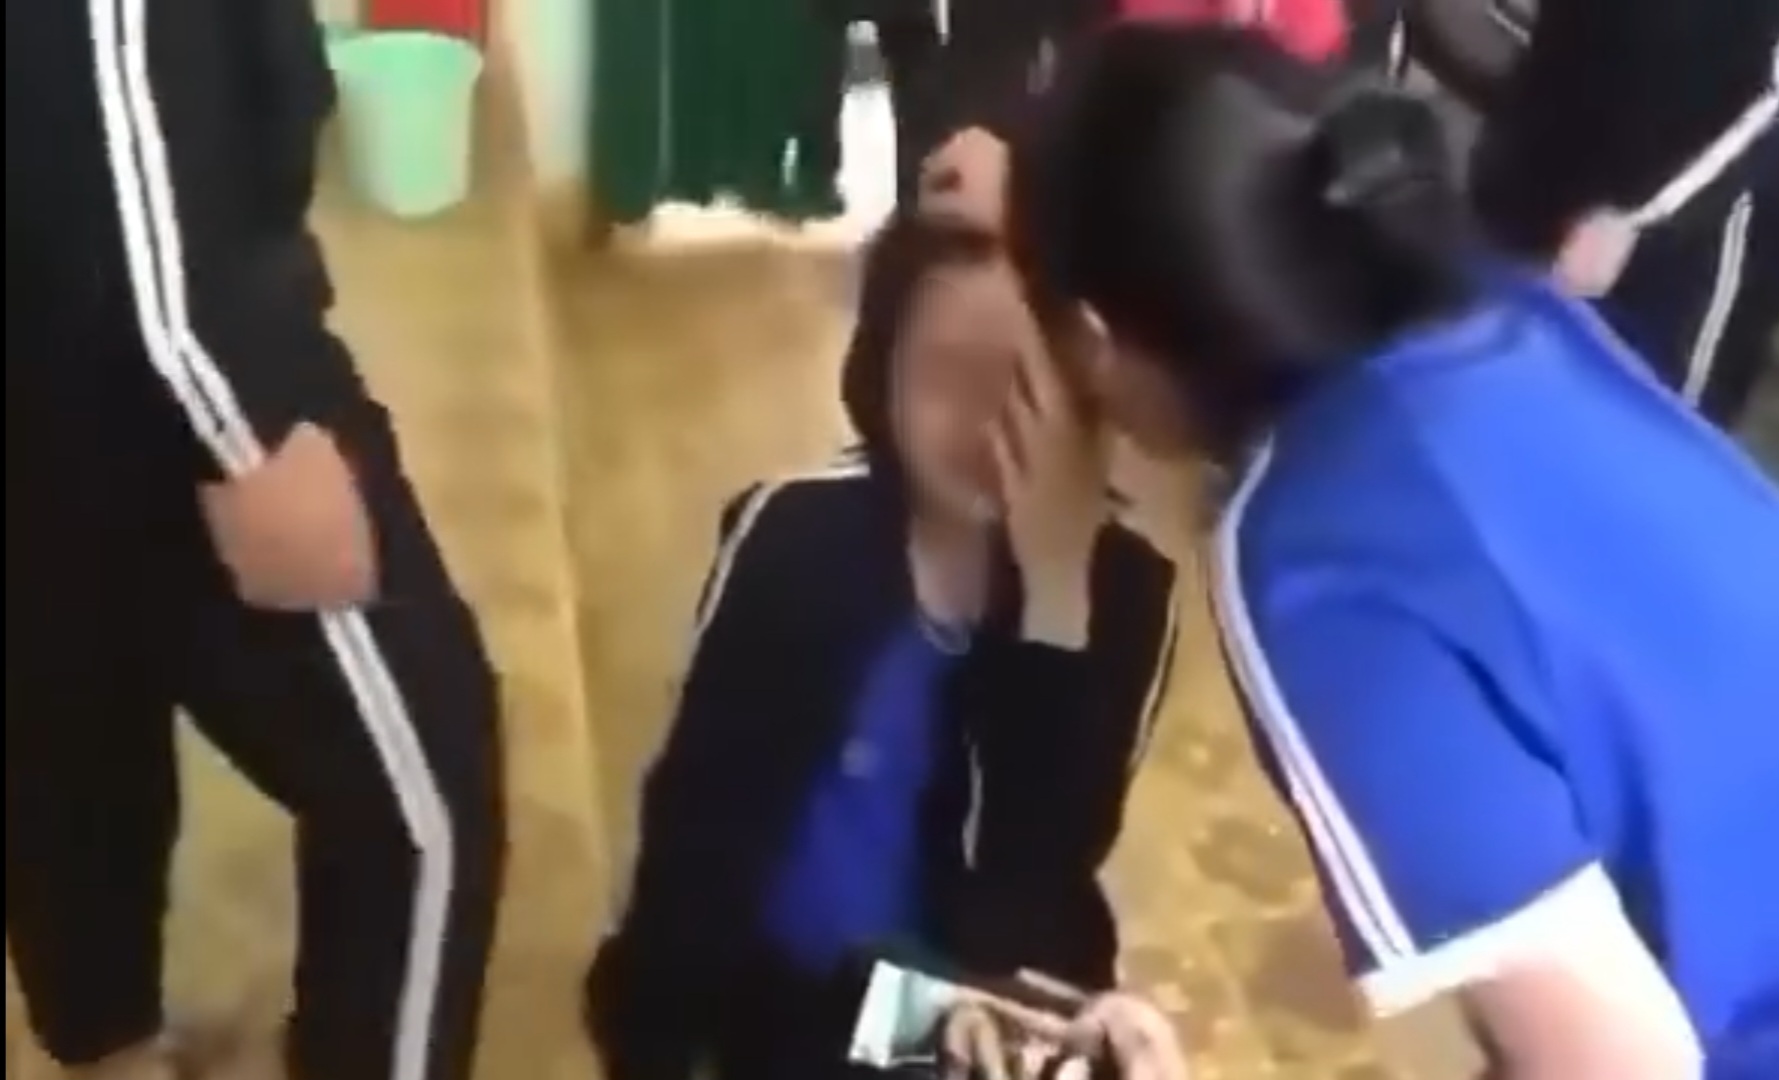 Một học sinh bị bắt quỳ gối, đánh hội đồng giữa lớp học ở Lâm Đồng - Ảnh 1.